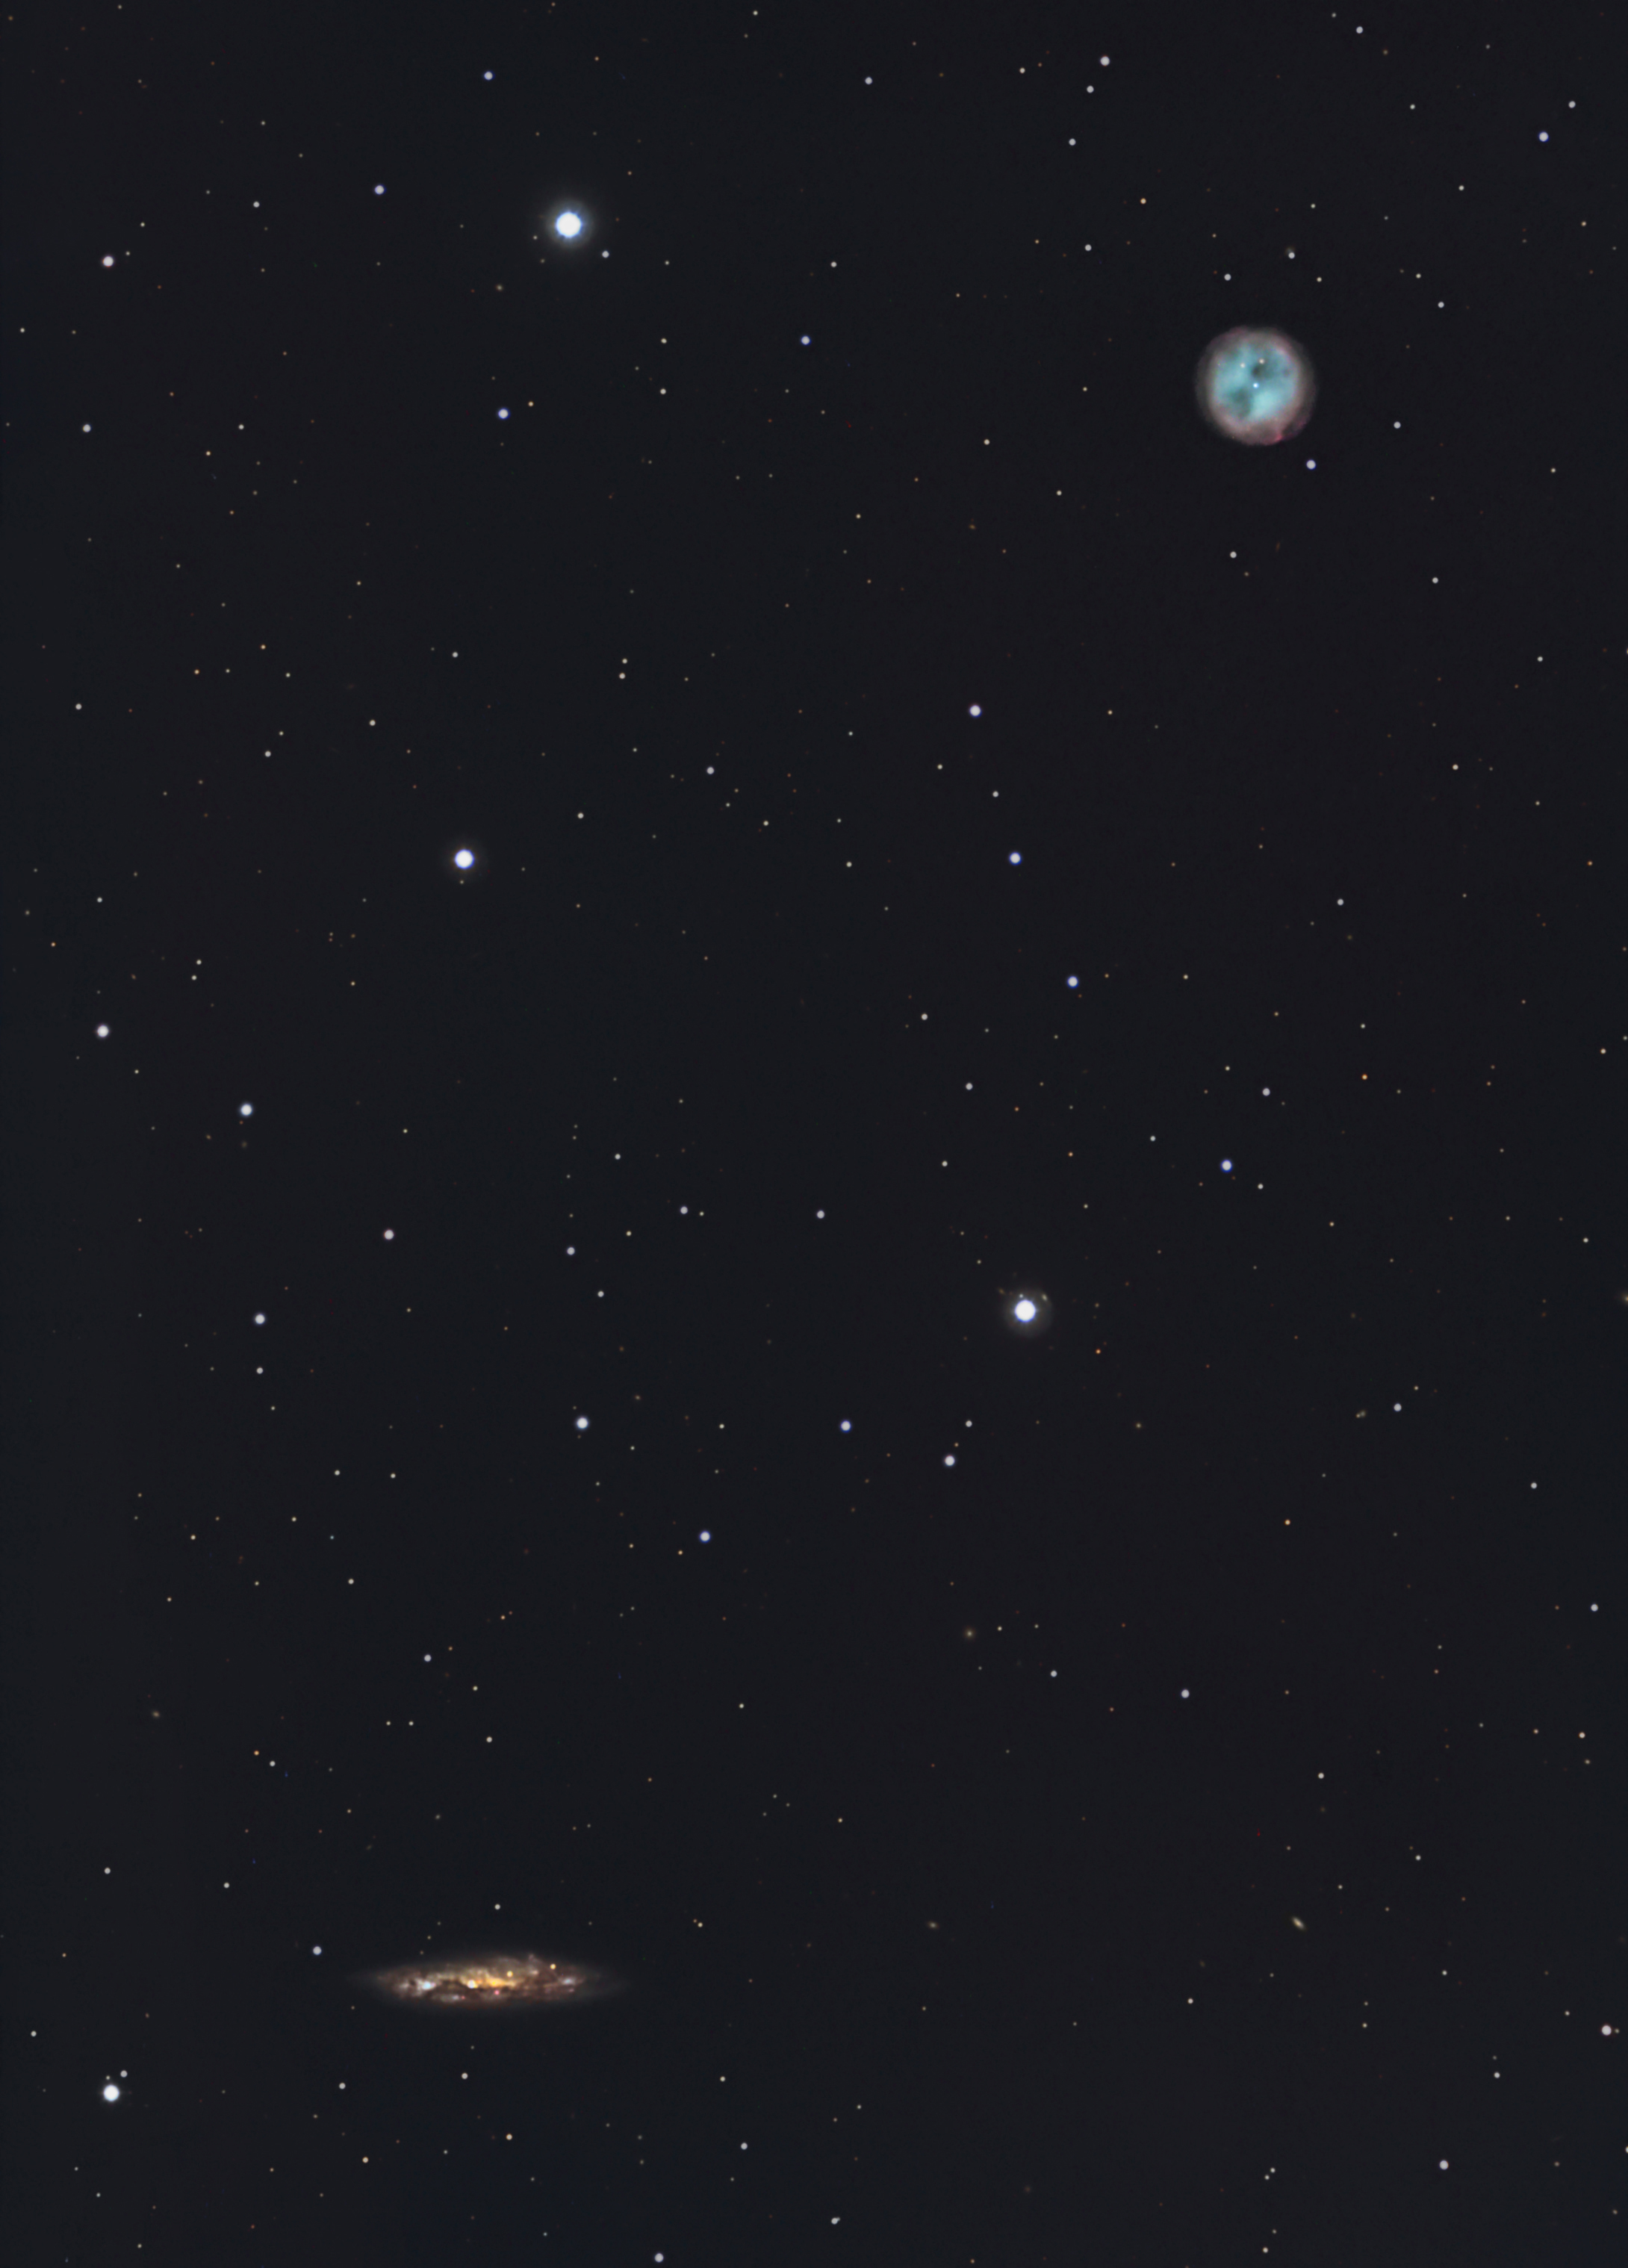 M108 (NGC3556) and M97 (Owl nebula)